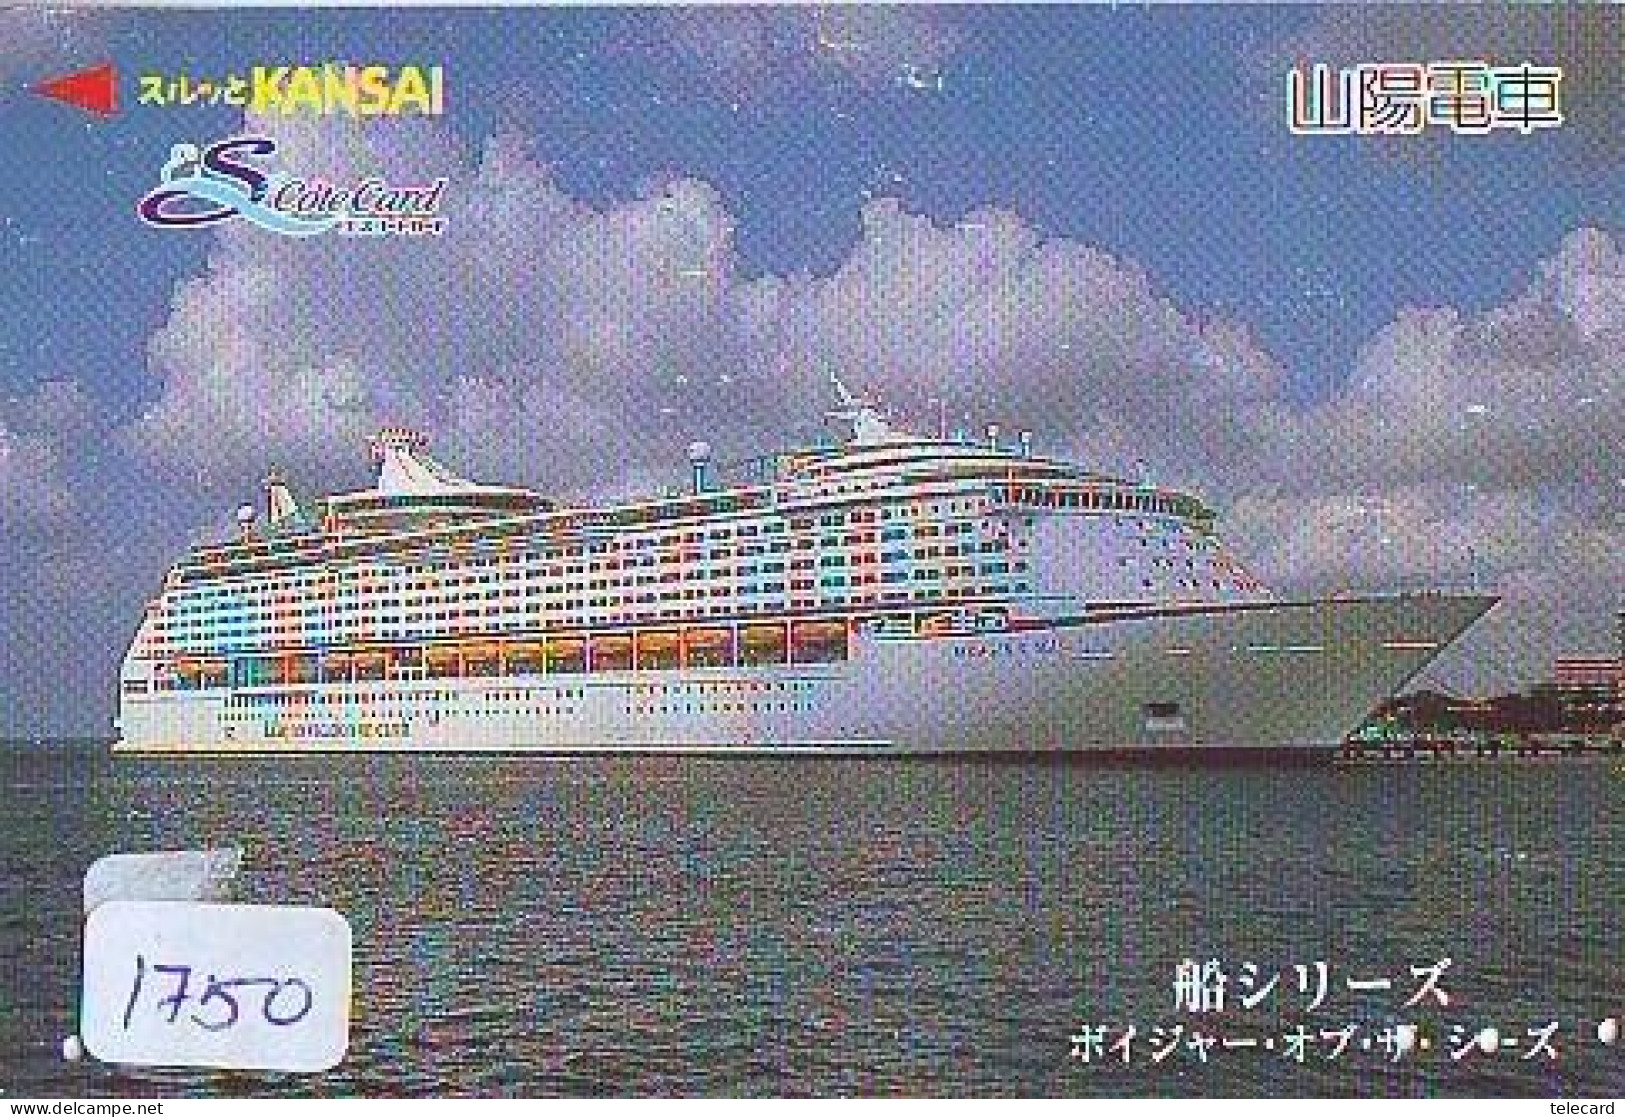 Télécarte JAPON *  * BATEAU * PHONECARD JAPAN * SHIP (1750) TK *  SCHIFF * Schip * Boot * Barco - Bateaux